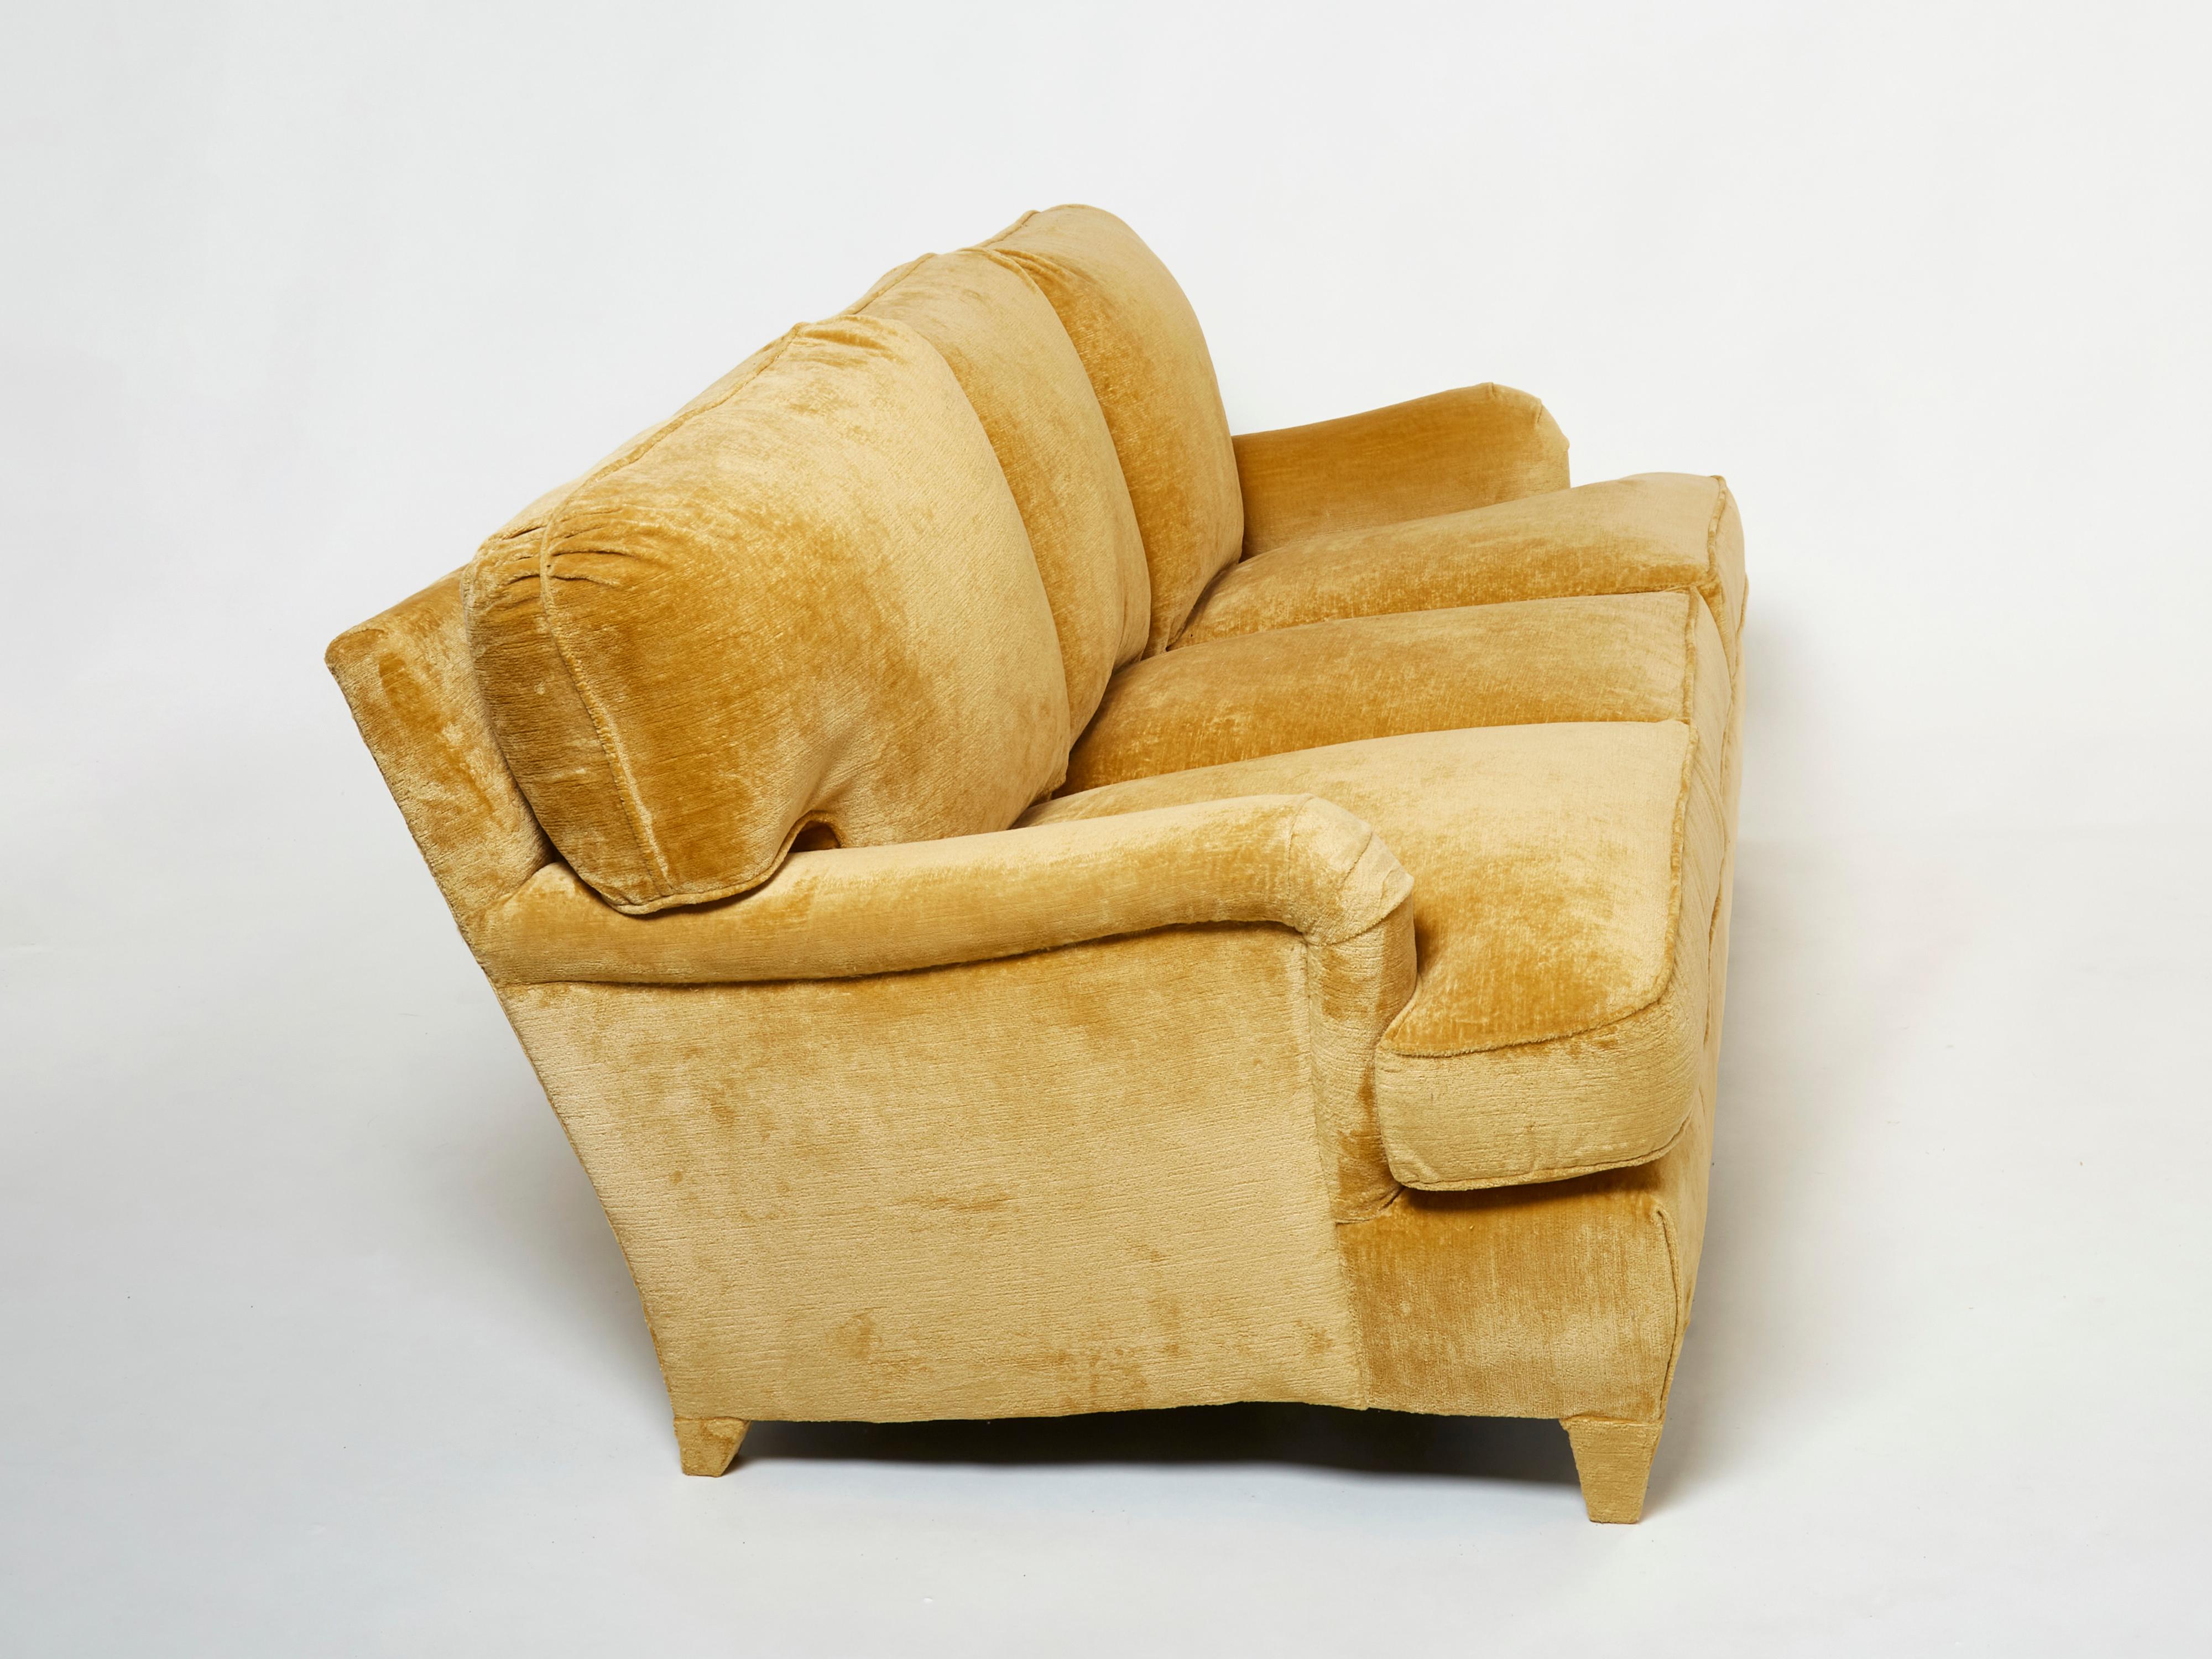 Velvet Jean-Michel Frank art deco sofa new velvet upholstery 1935 